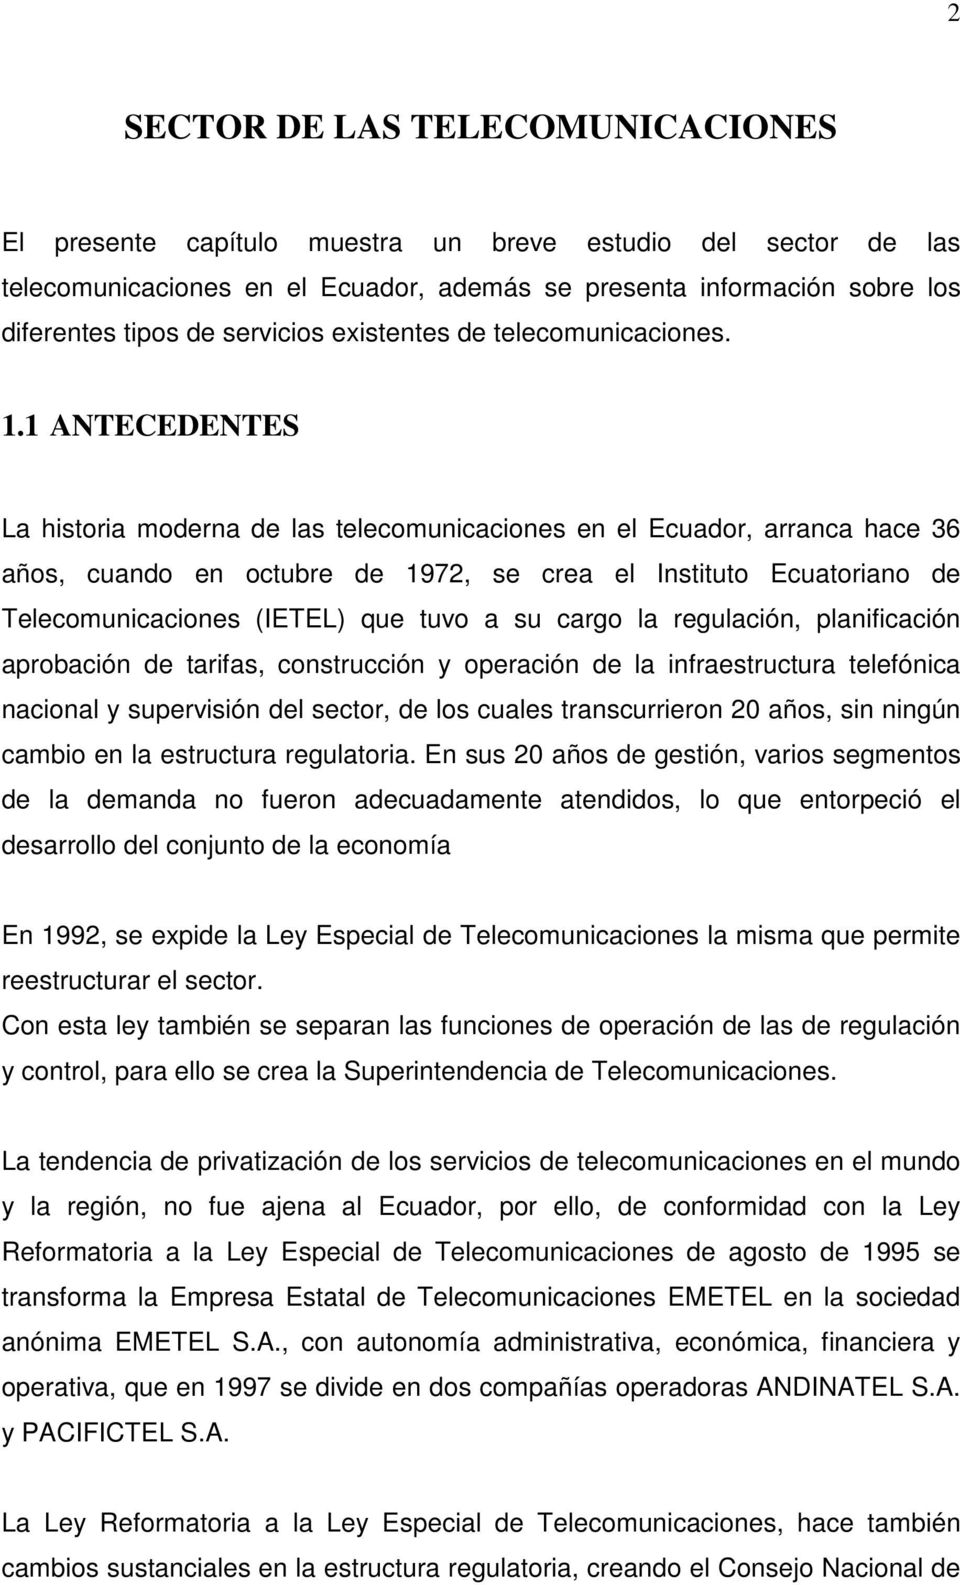 1 ANTECEDENTES La historia moderna de las telecomunicaciones en el Ecuador, arranca hace 36 años, cuando en octubre de 1972, se crea el Instituto Ecuatoriano de Telecomunicaciones (IETEL) que tuvo a